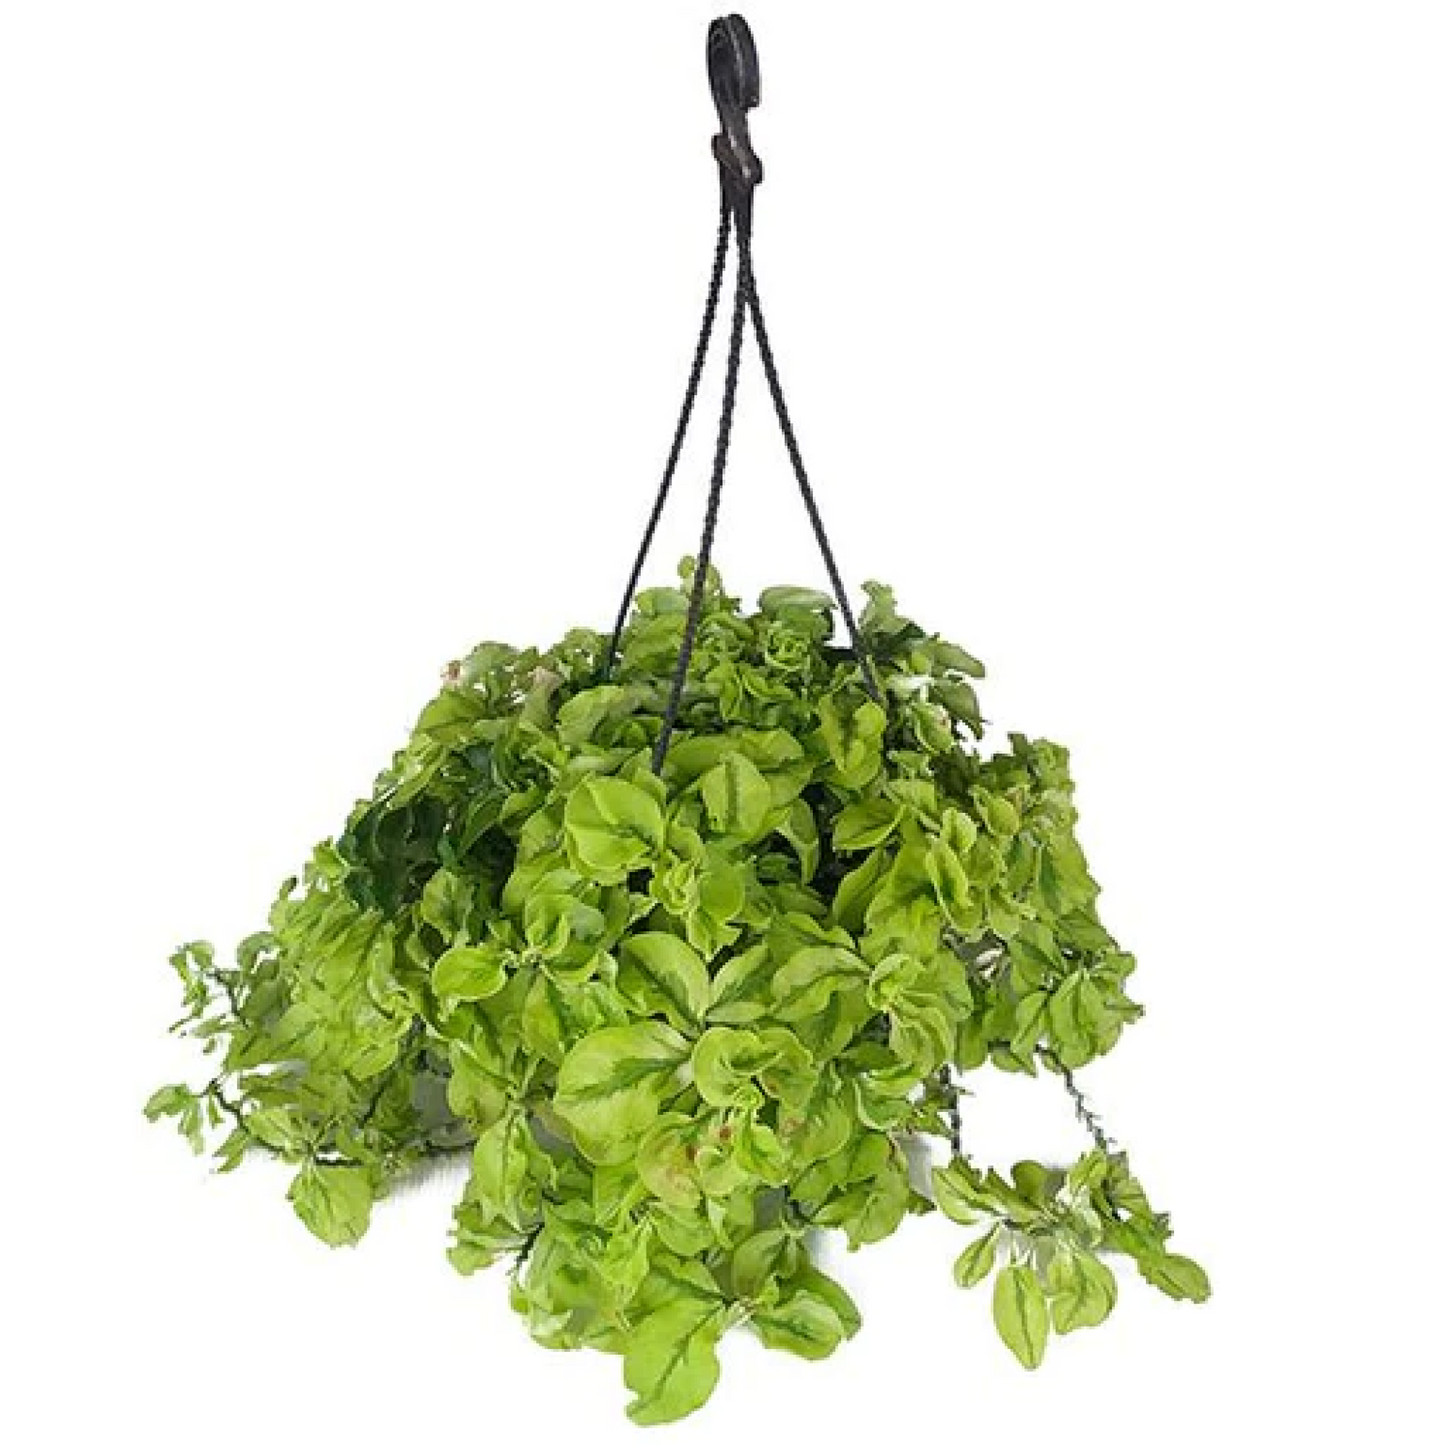 Pedilanthus (Hanging Basket) Plant